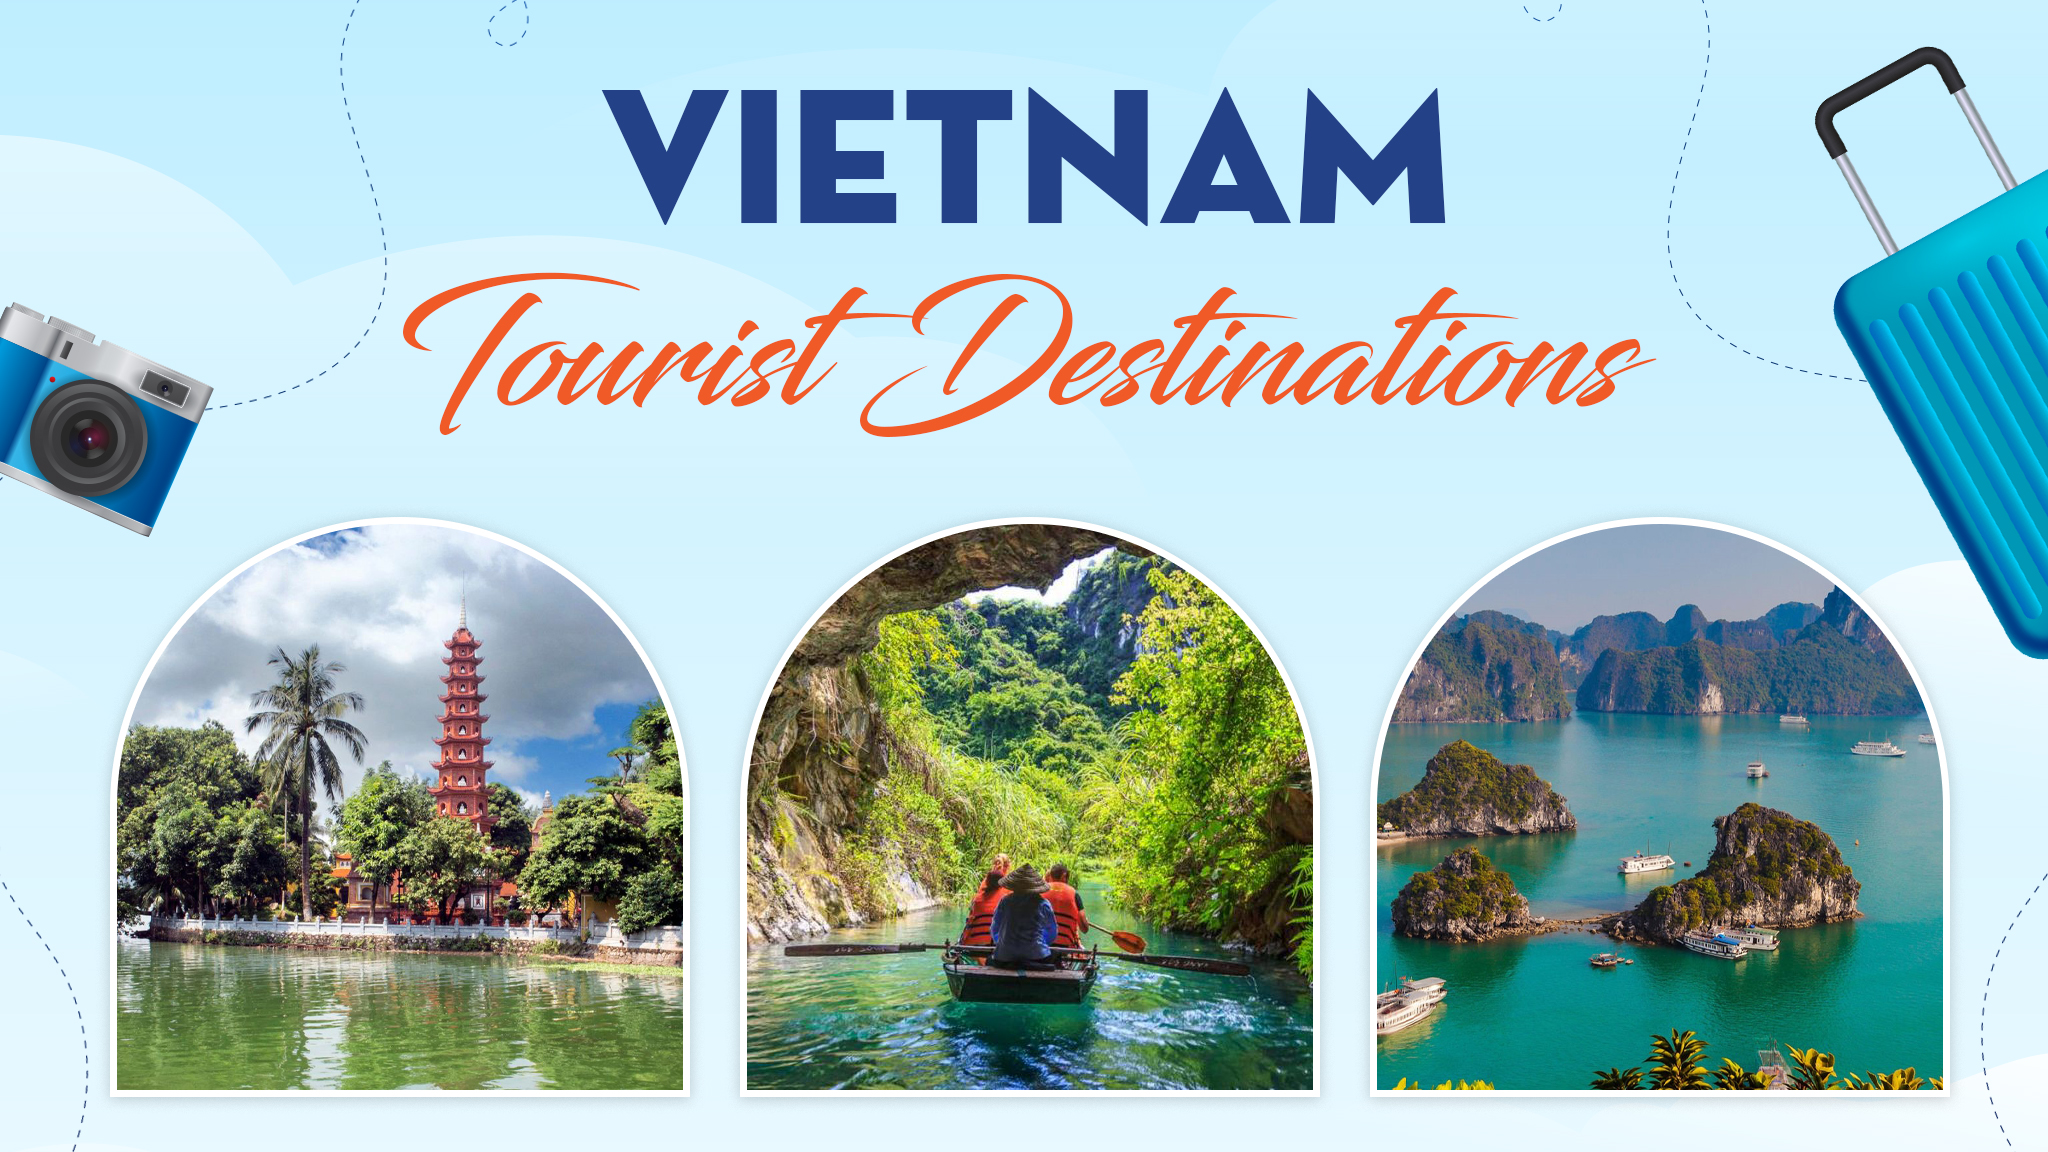 Vietnam tourist destinations